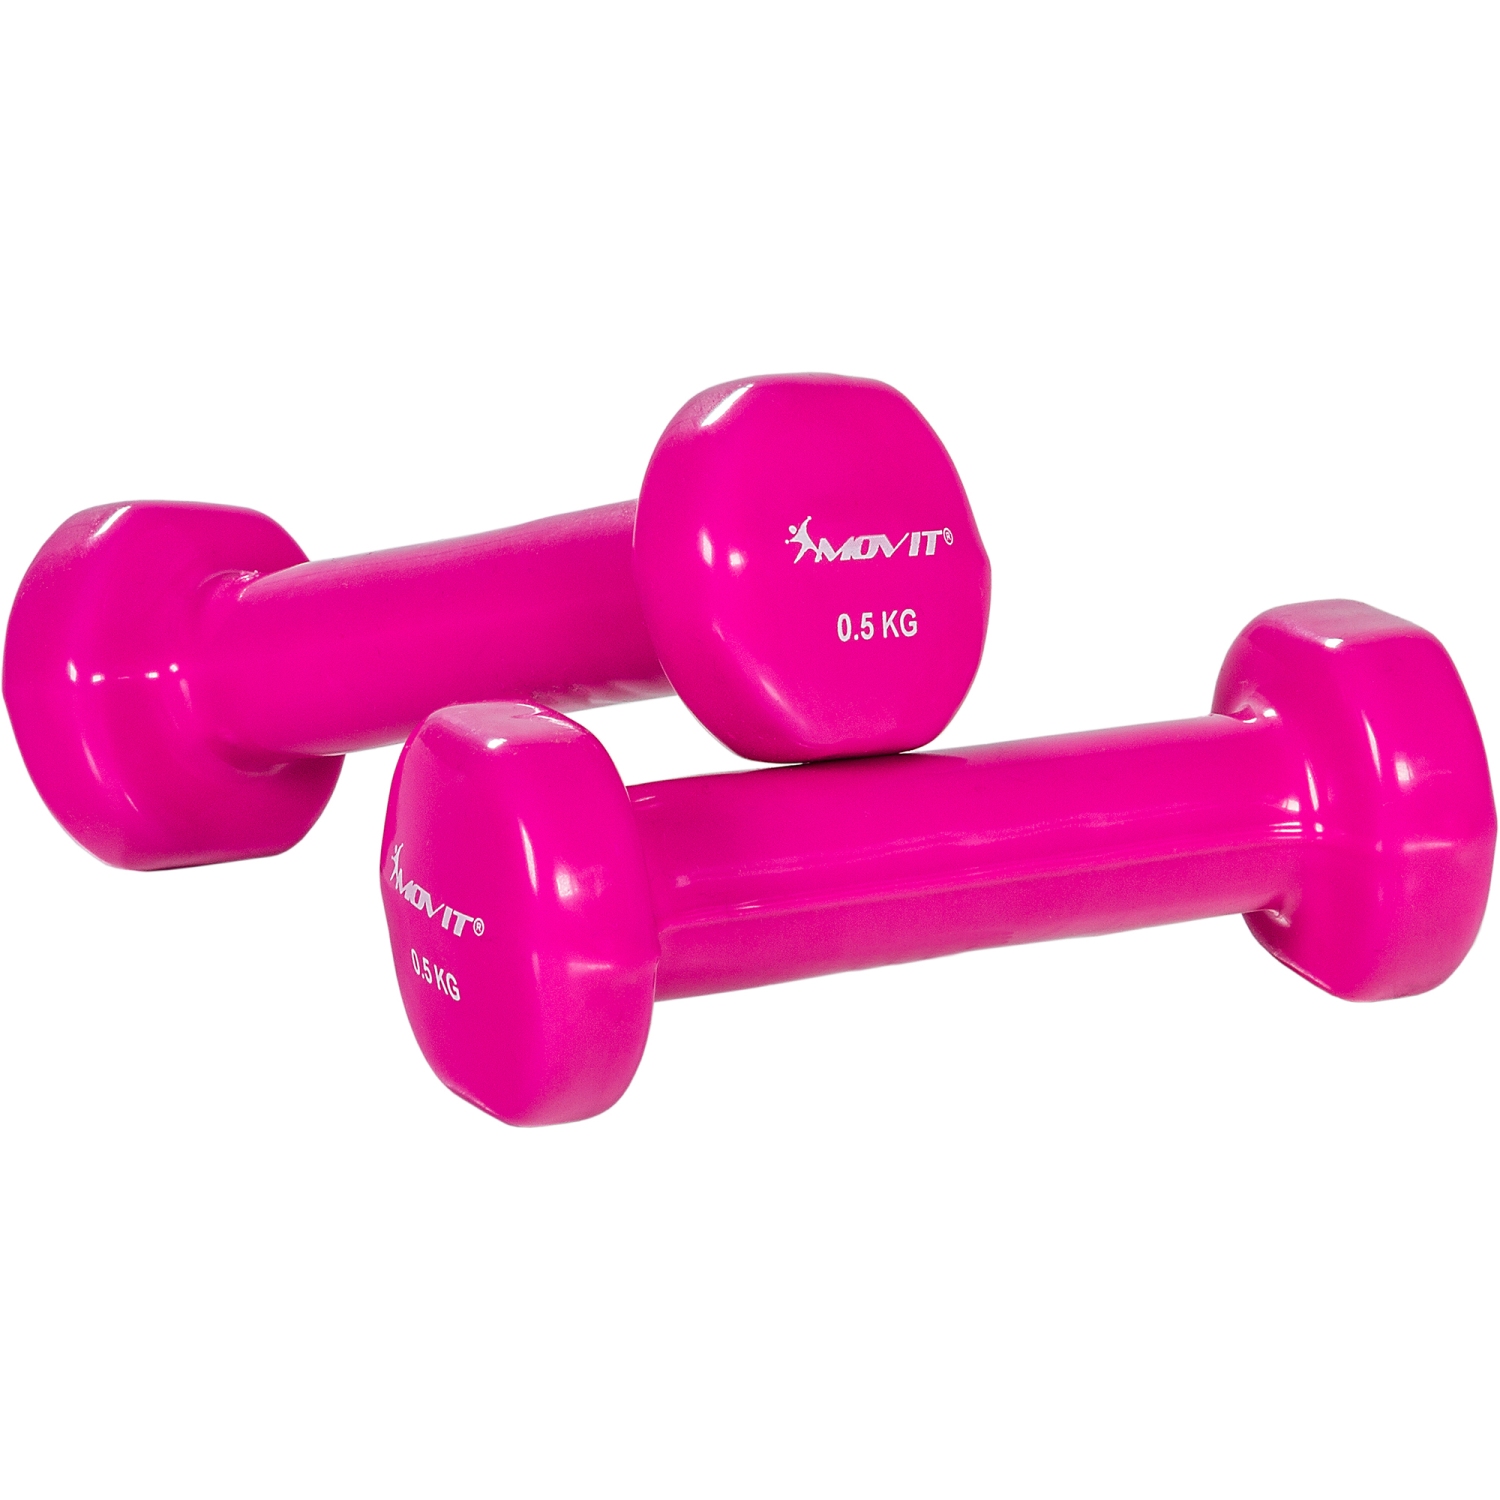 Dumbells set – Gewichten – Fitness – 2x 0.5 kg  – Roze